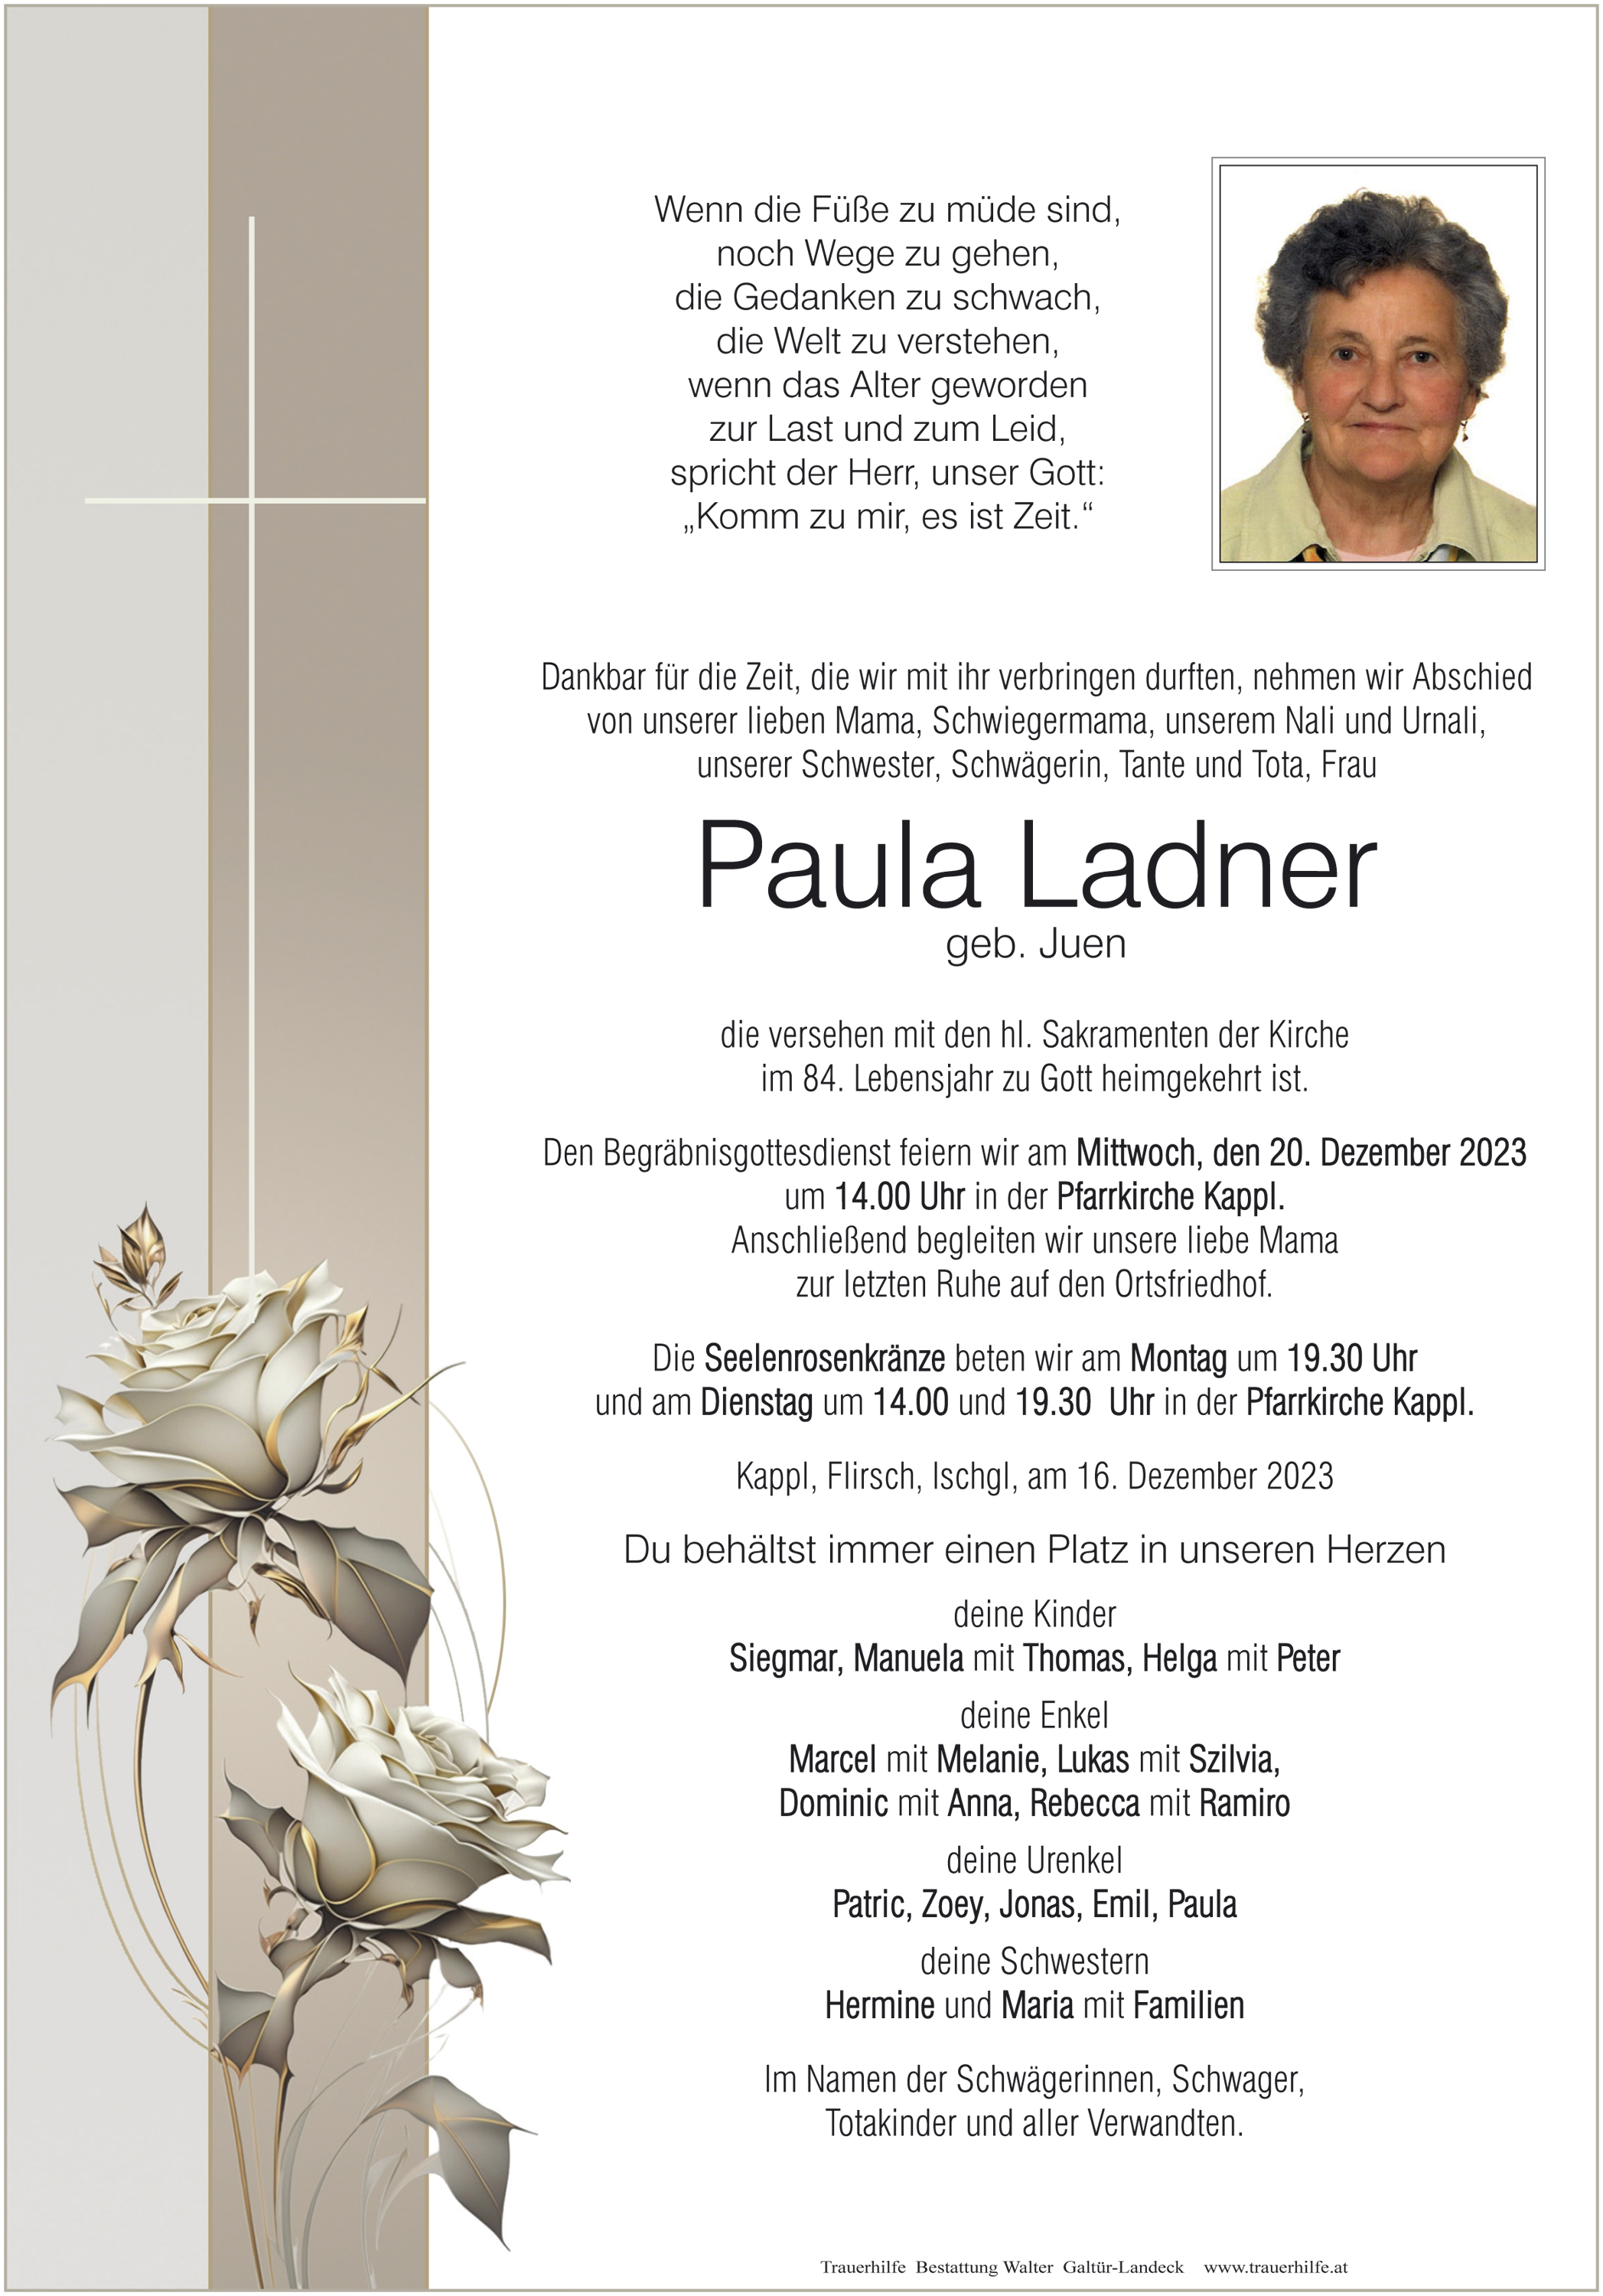 Paula Ladner